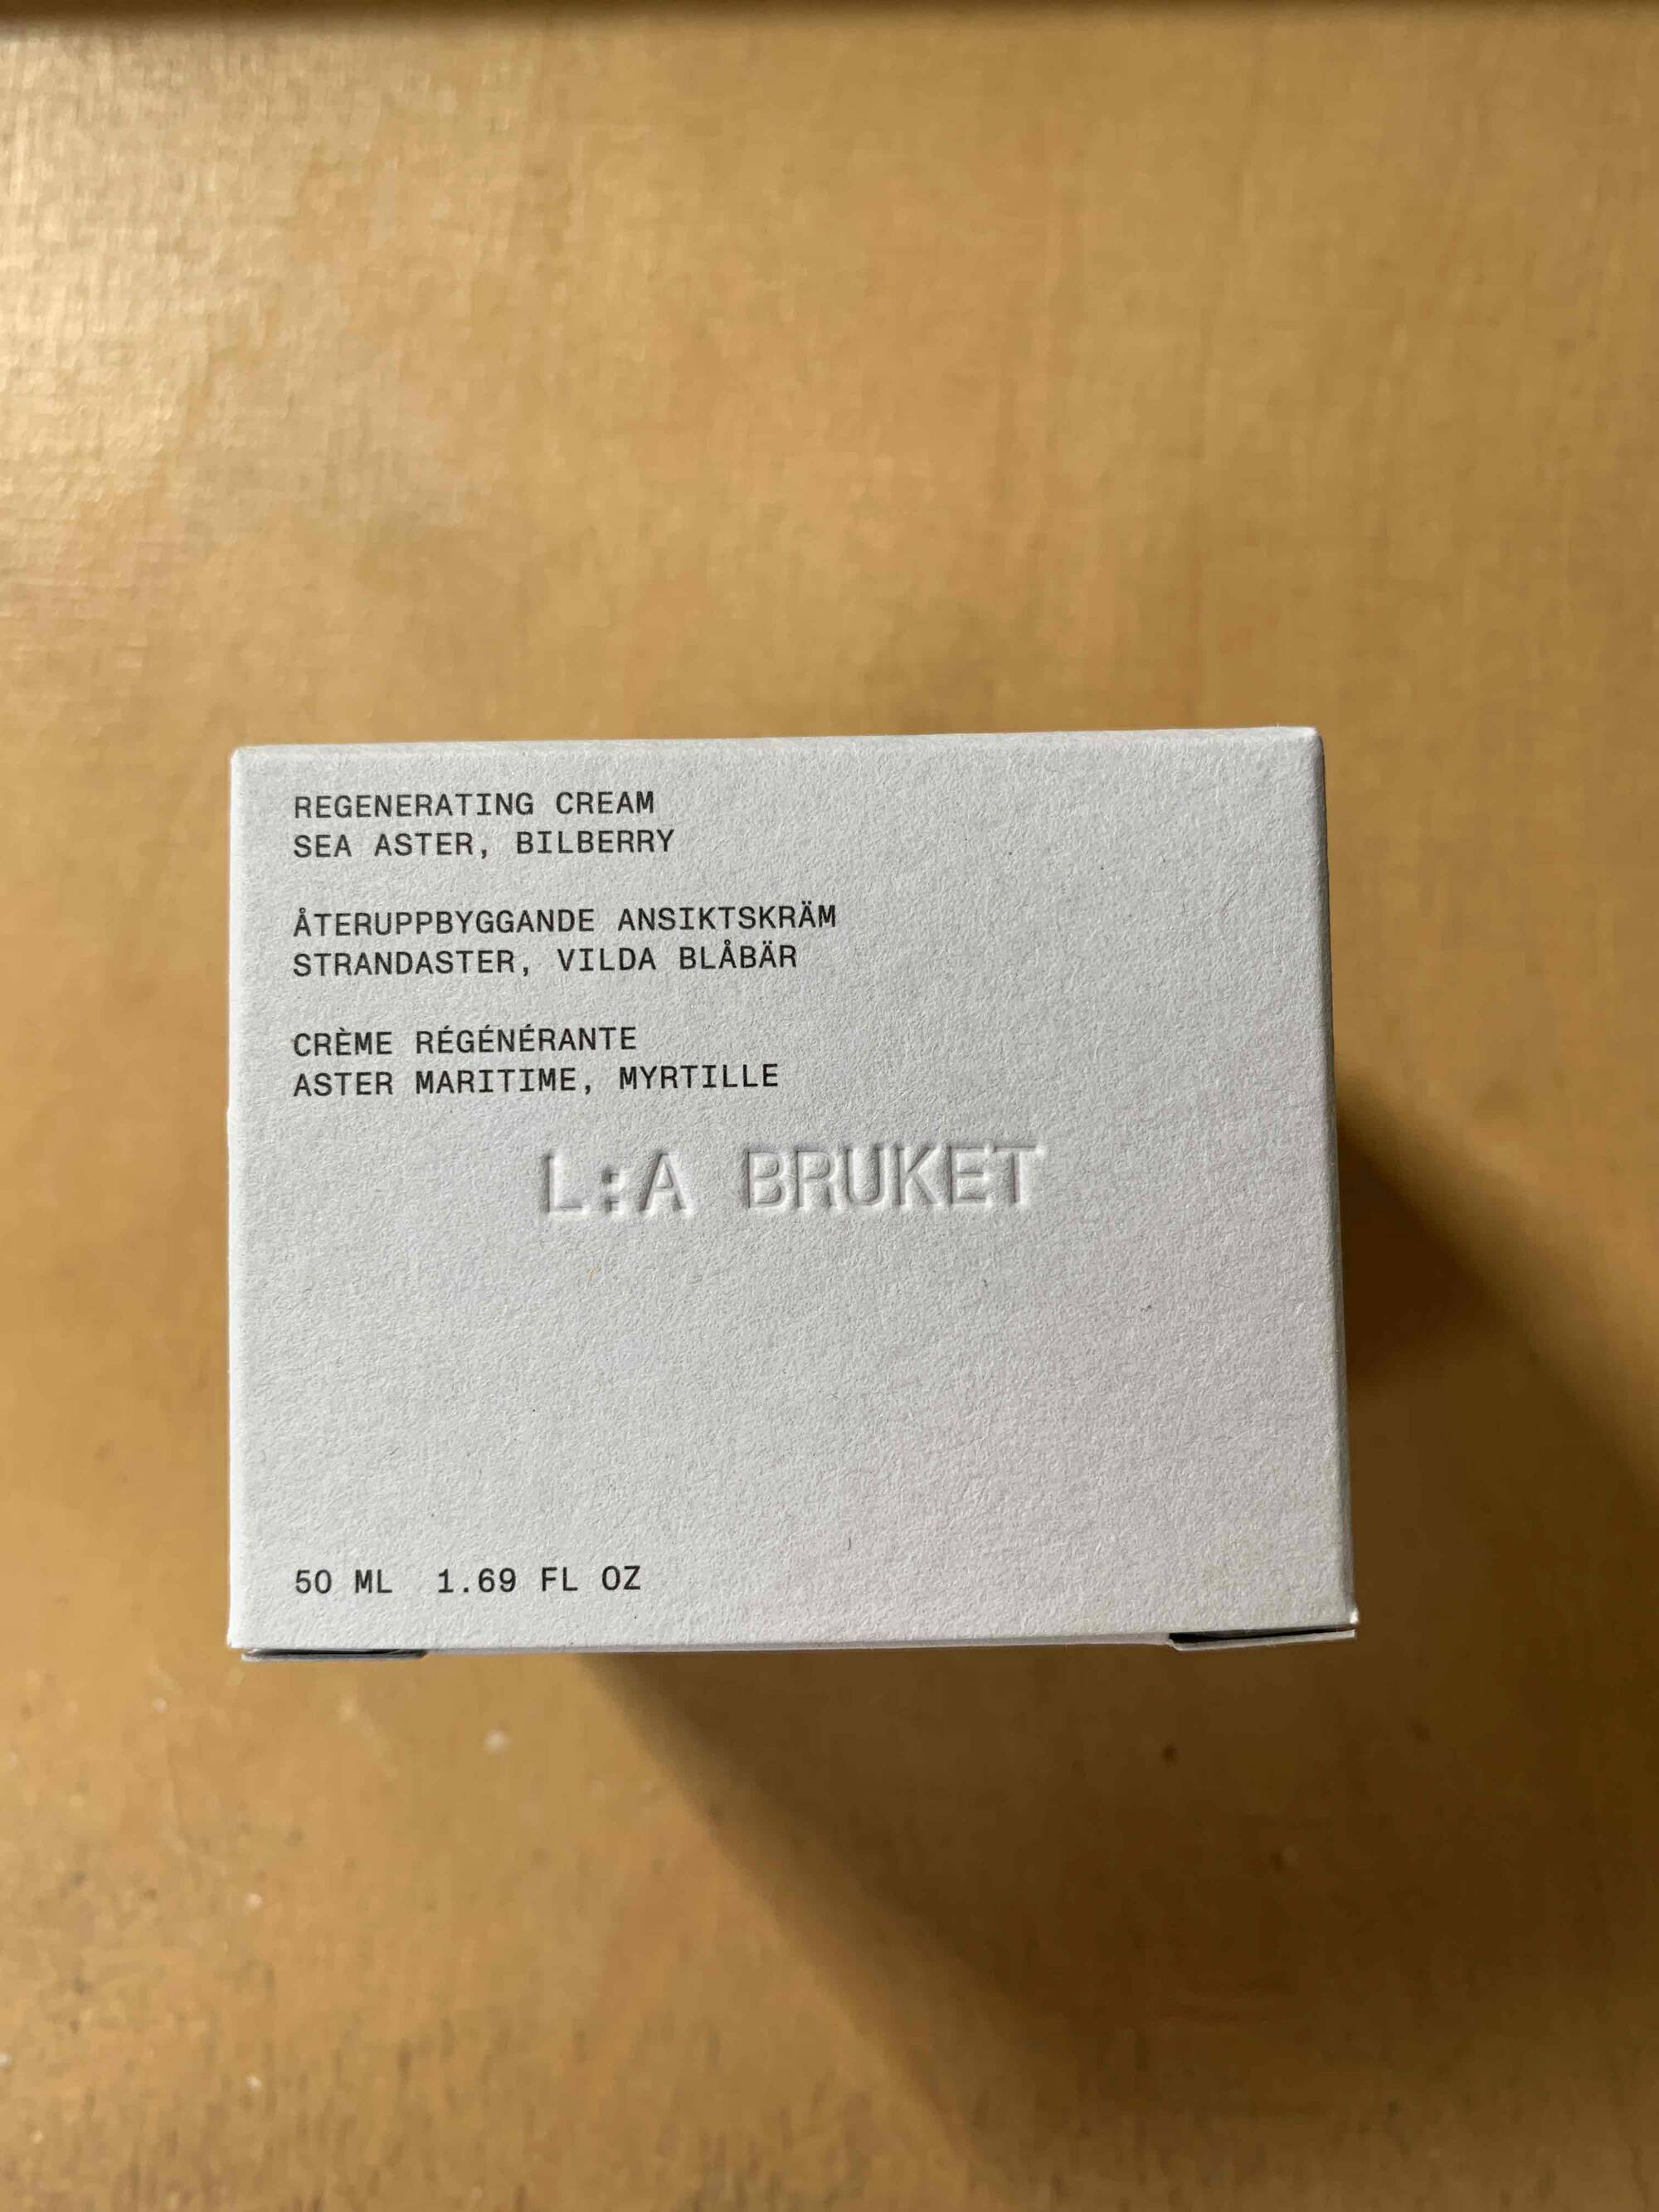 L:A BRUKET - Crème régénérante - Aster maritime myrtille